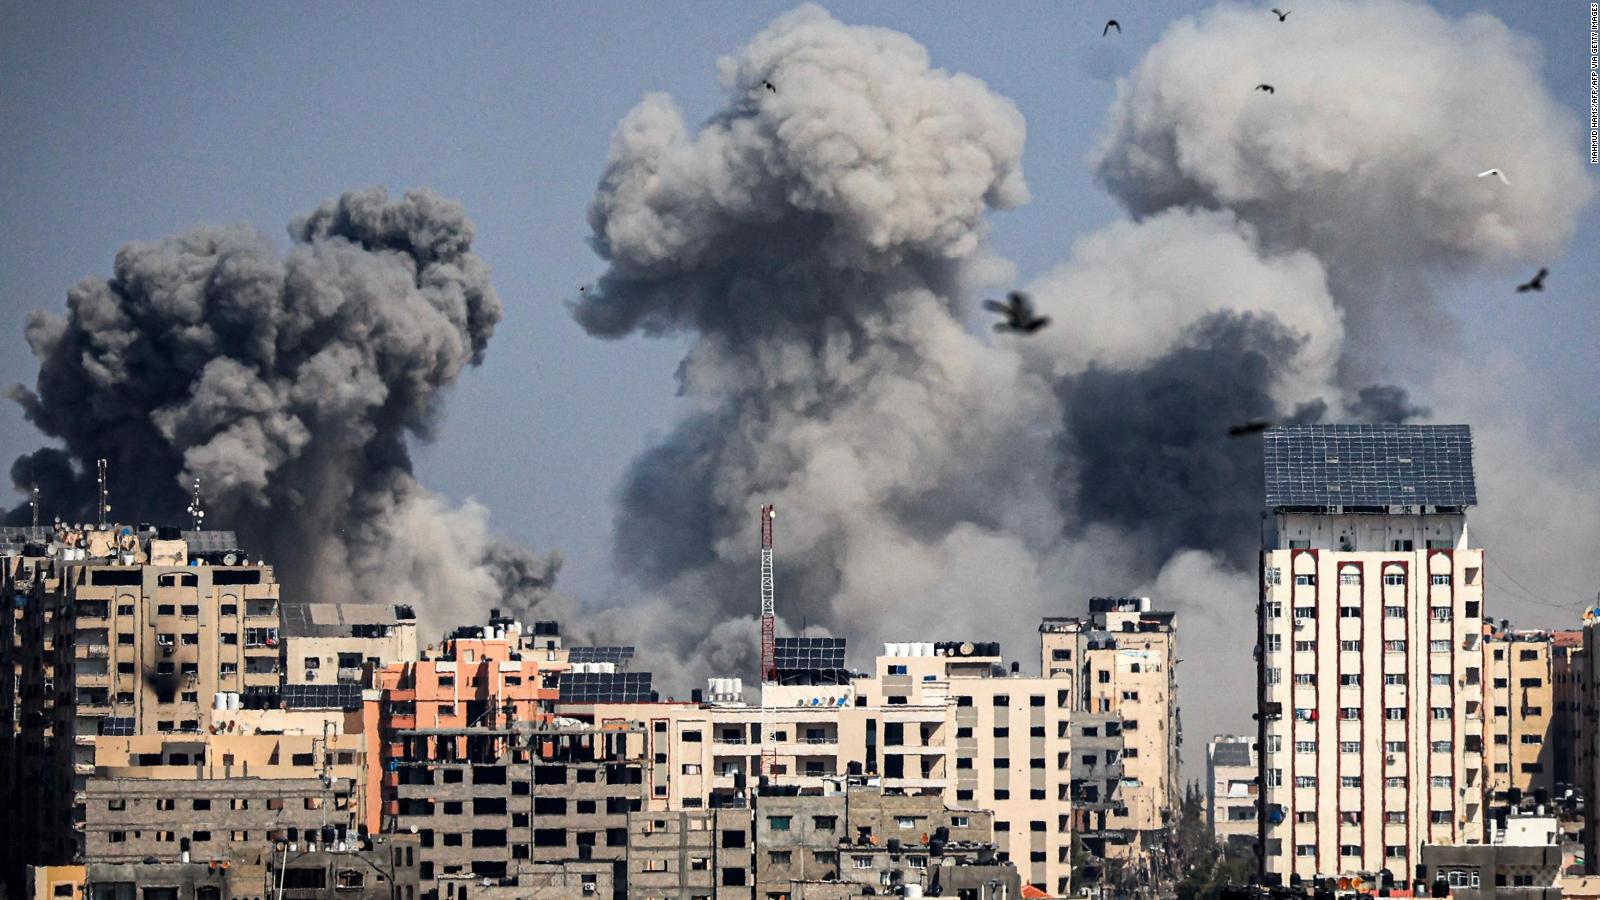 Gaza: muerte, hambre y destrucción tras 6 meses de guerra